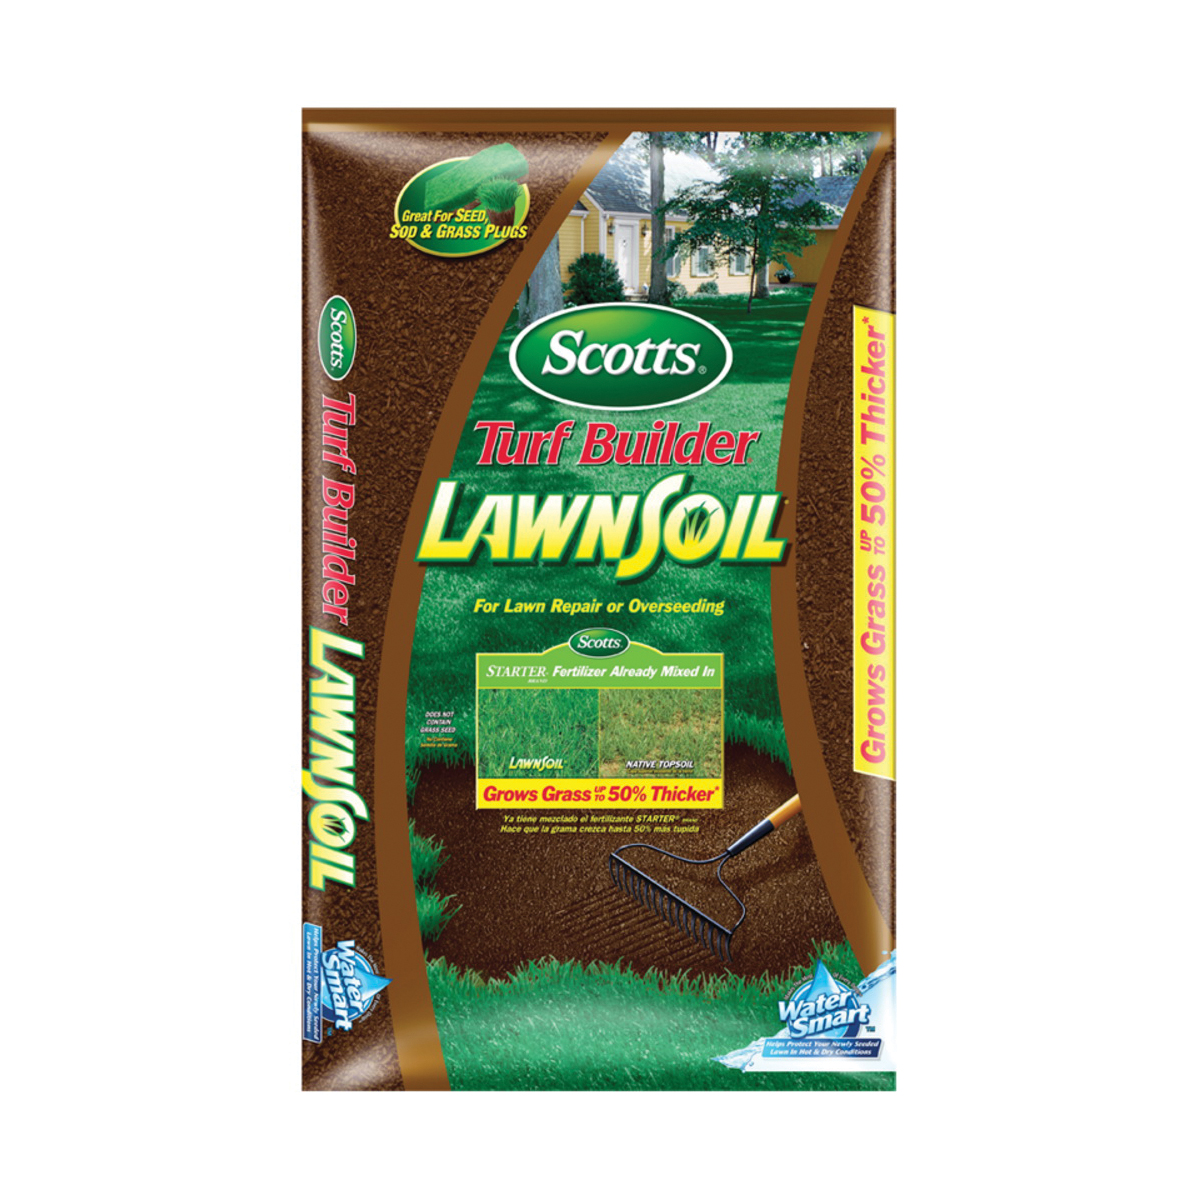 Scotts LawnSoil 79559750 Fertilizer Bag, 0.08-0.03-0.02 N-P-K Ratio - 1